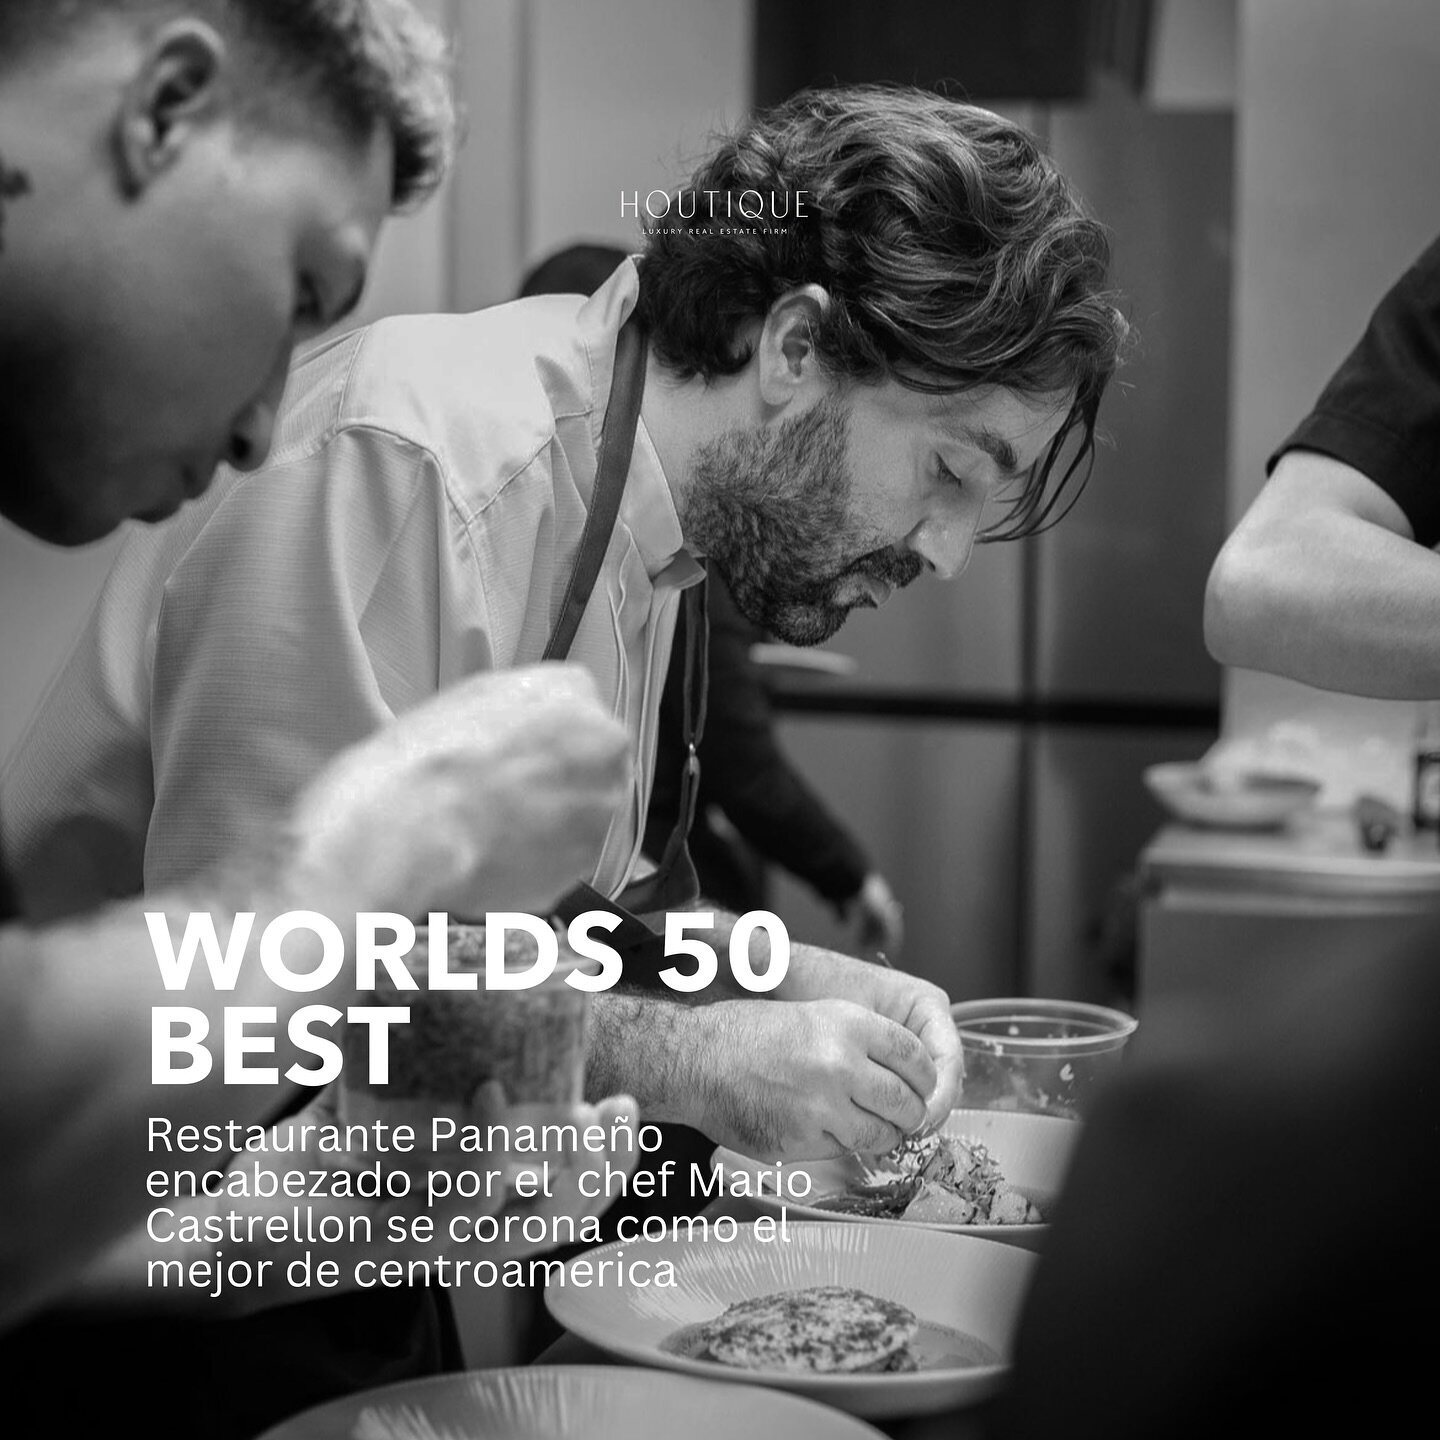 Mario Castrell&oacute;n llev&oacute; a su restaurante Maito a la posici&oacute;n n&uacute;mero 6 del Latin America&rsquo;s 50 Best Restaurants en 2022, y as&iacute; se consolida como uno de los primeros chefs en desarrollar el concepto de cocina cont